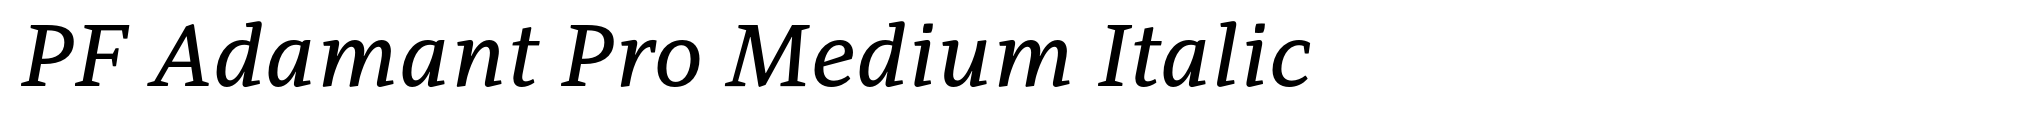 PF Adamant Pro Medium Italic image